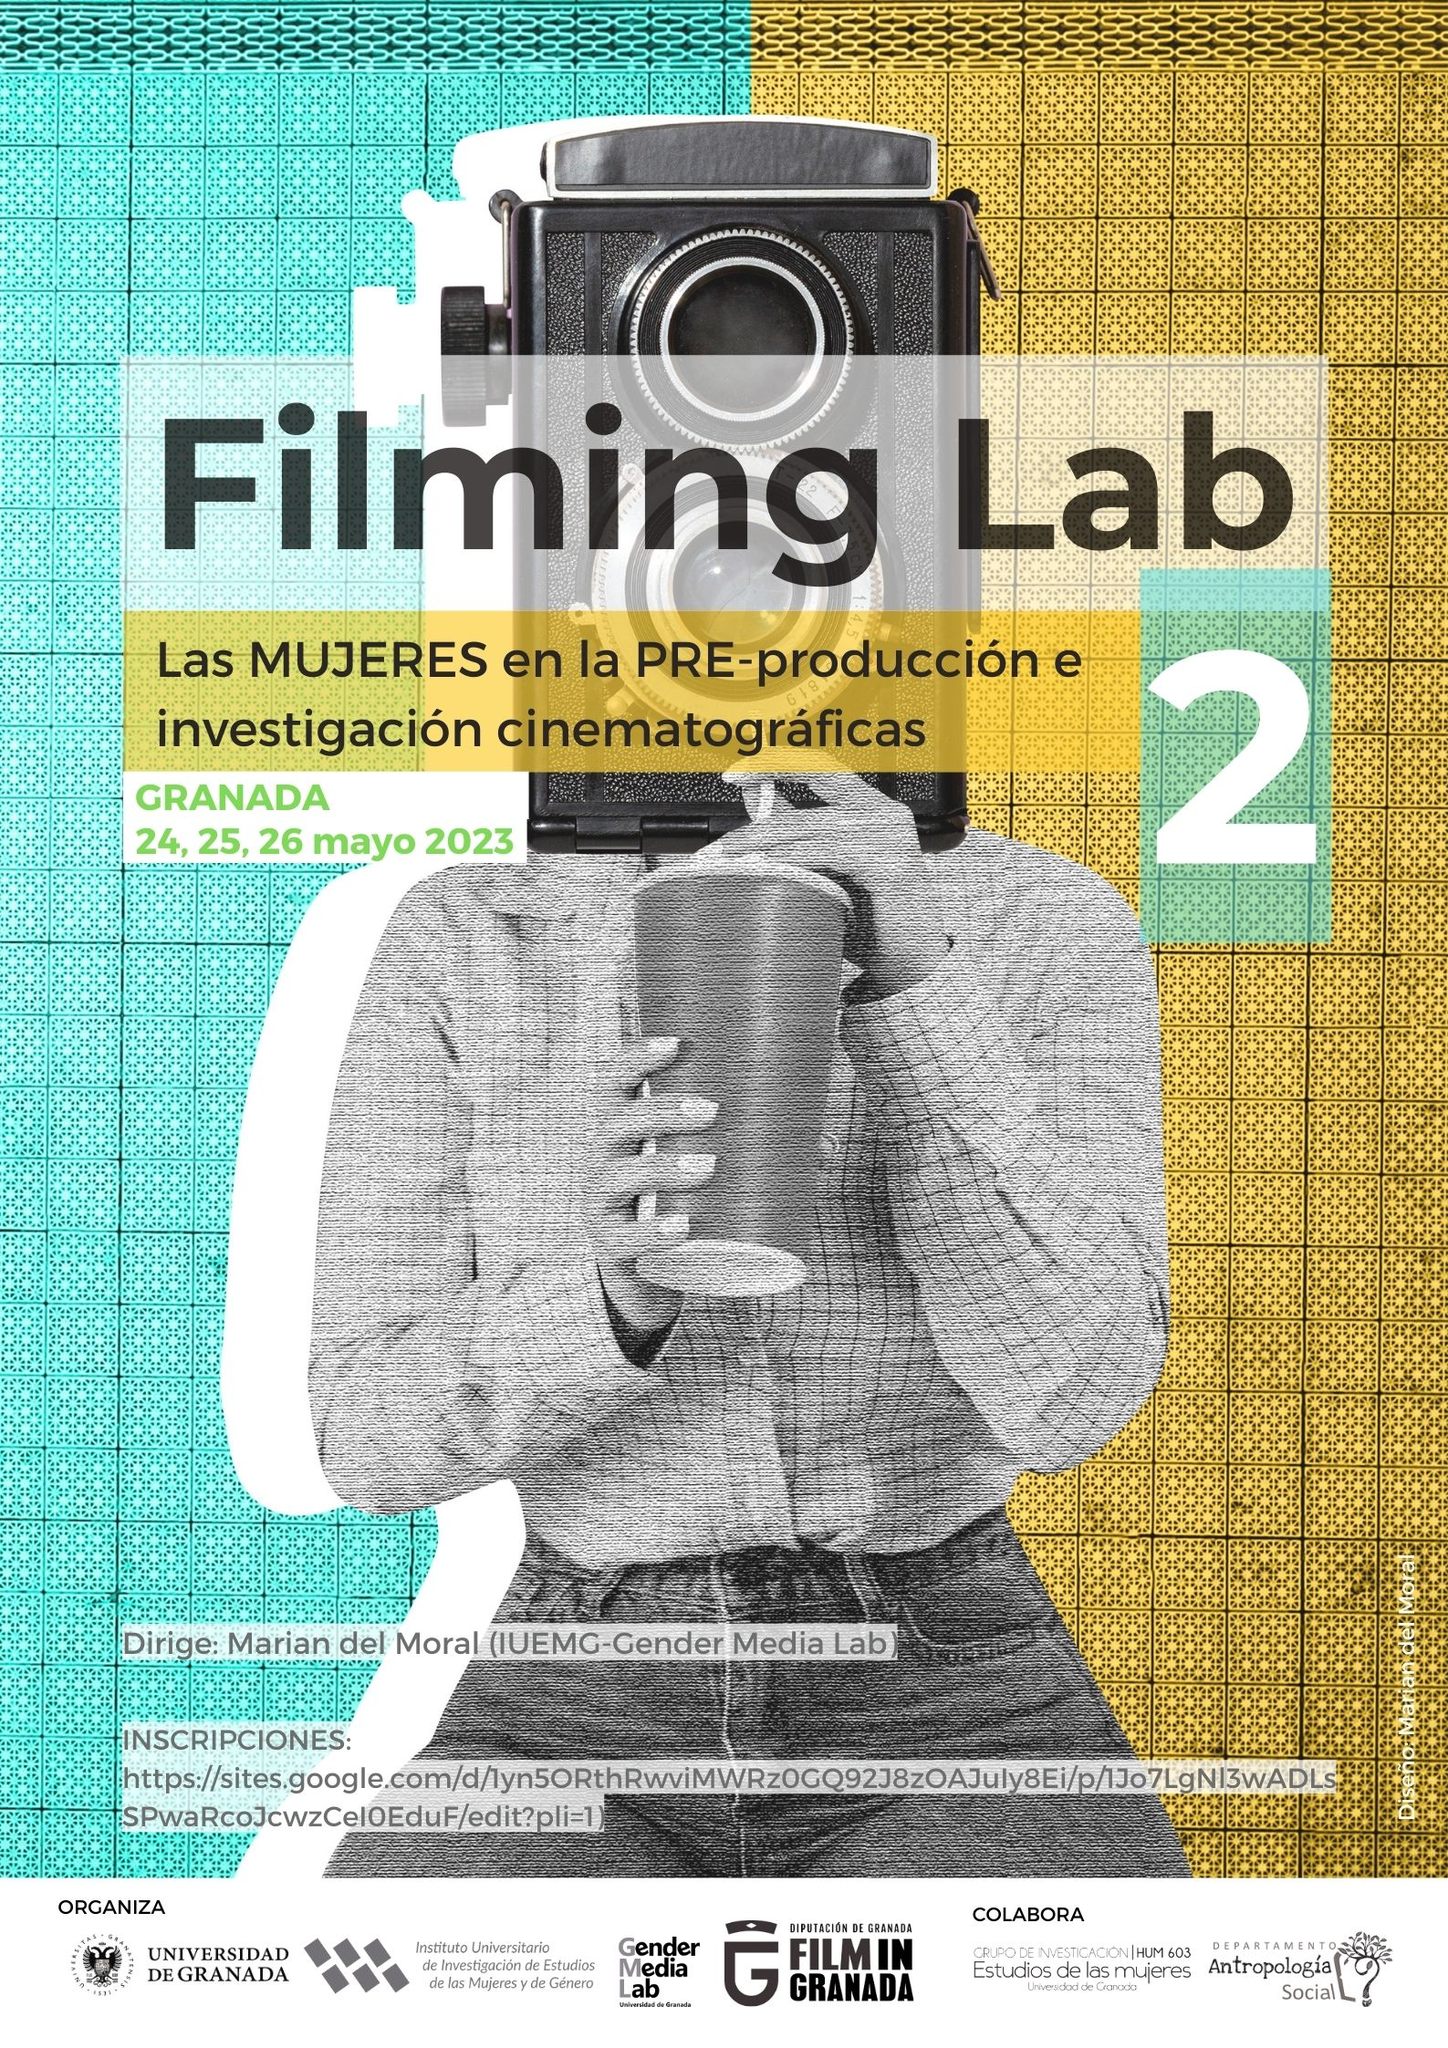 «Filming Lab 2» reunirá a cineastas e investigadores en torno a la preproducción